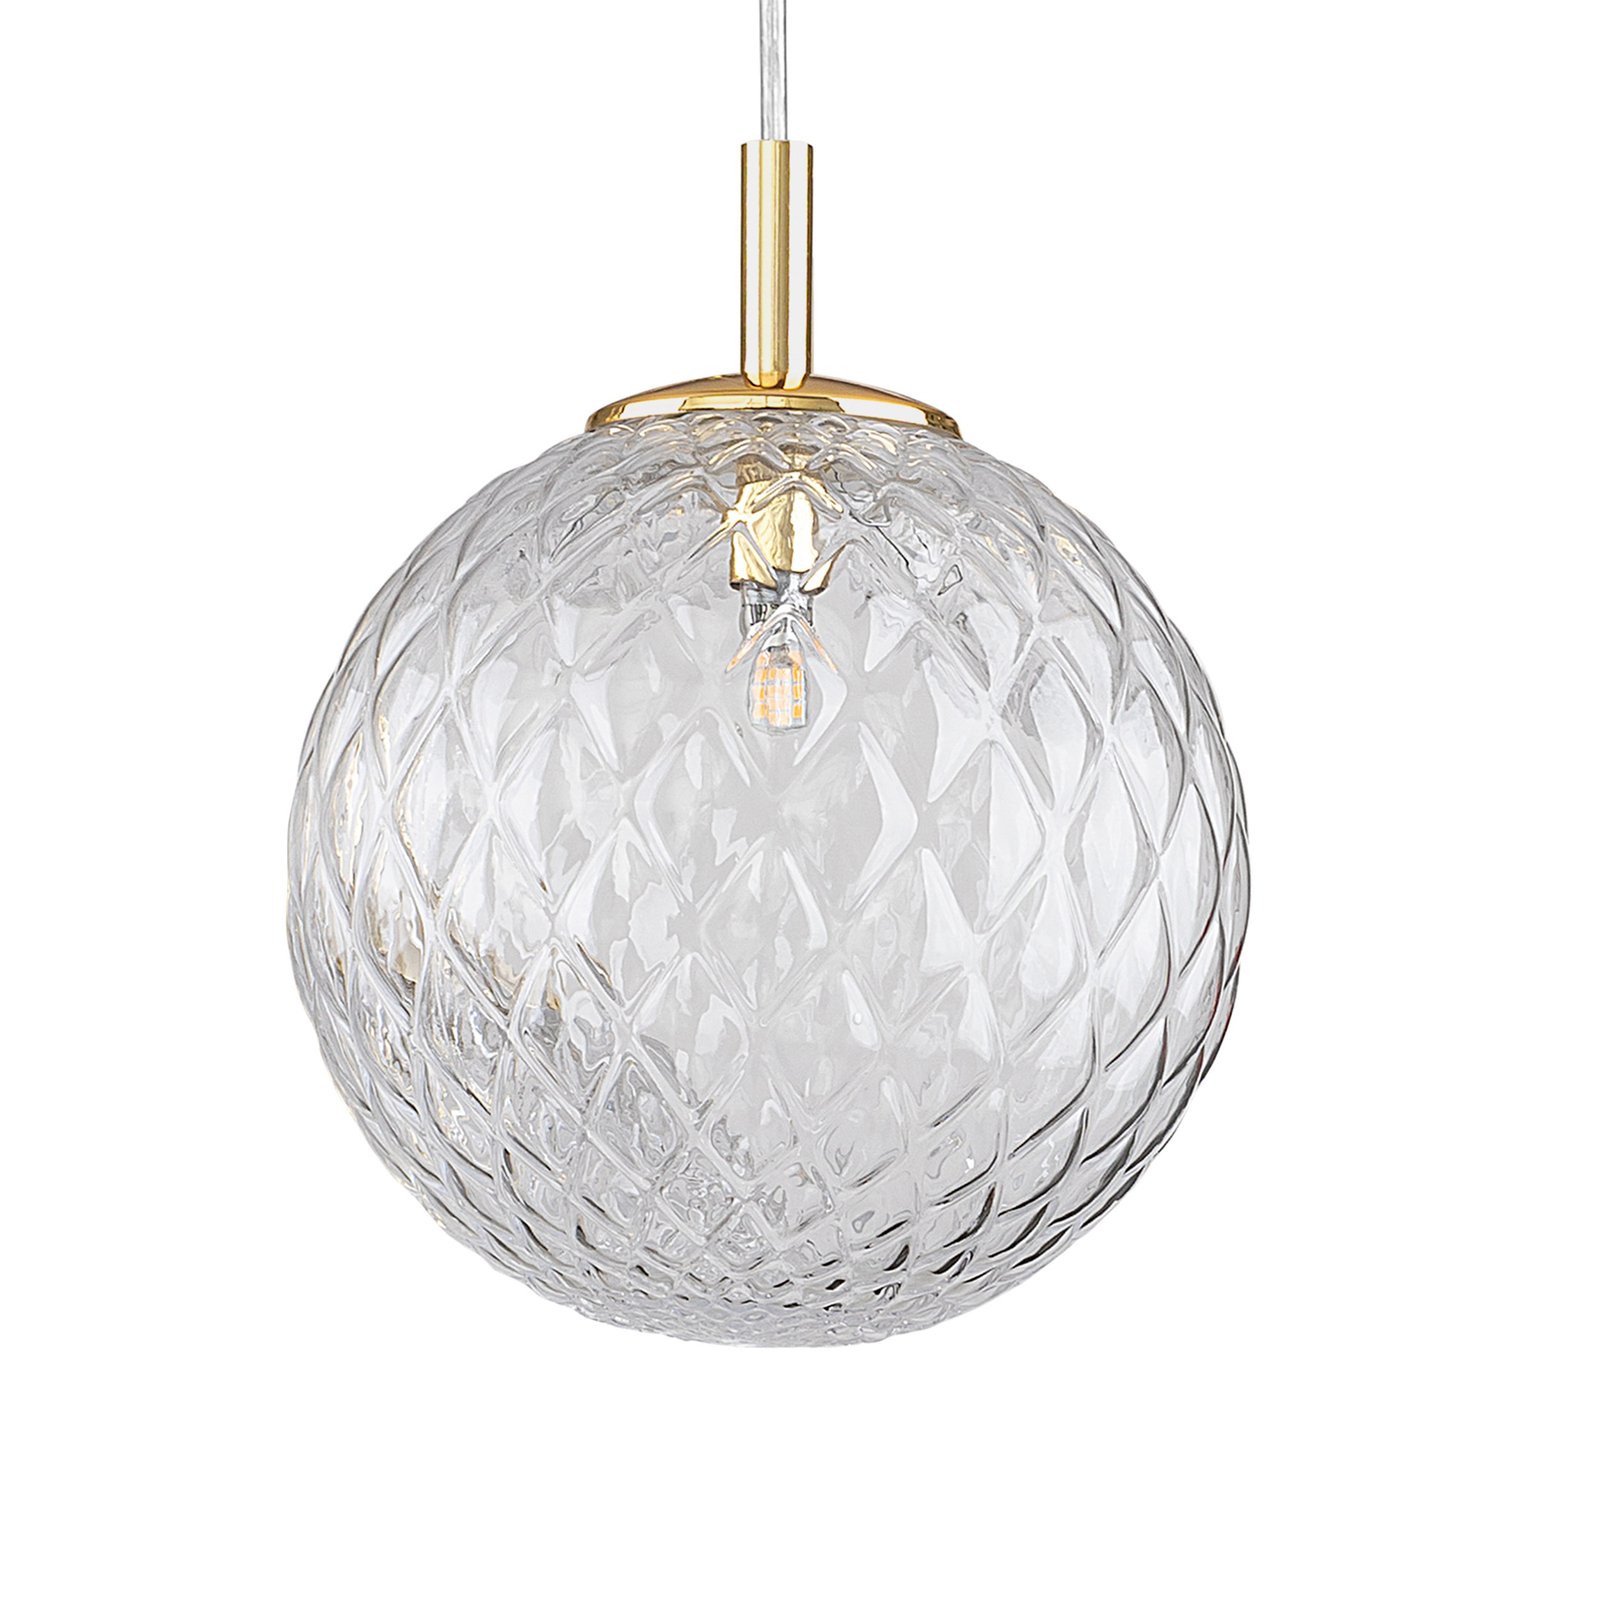 Cadix pendant light made of glass, 1-bulb, Ø 21 cm